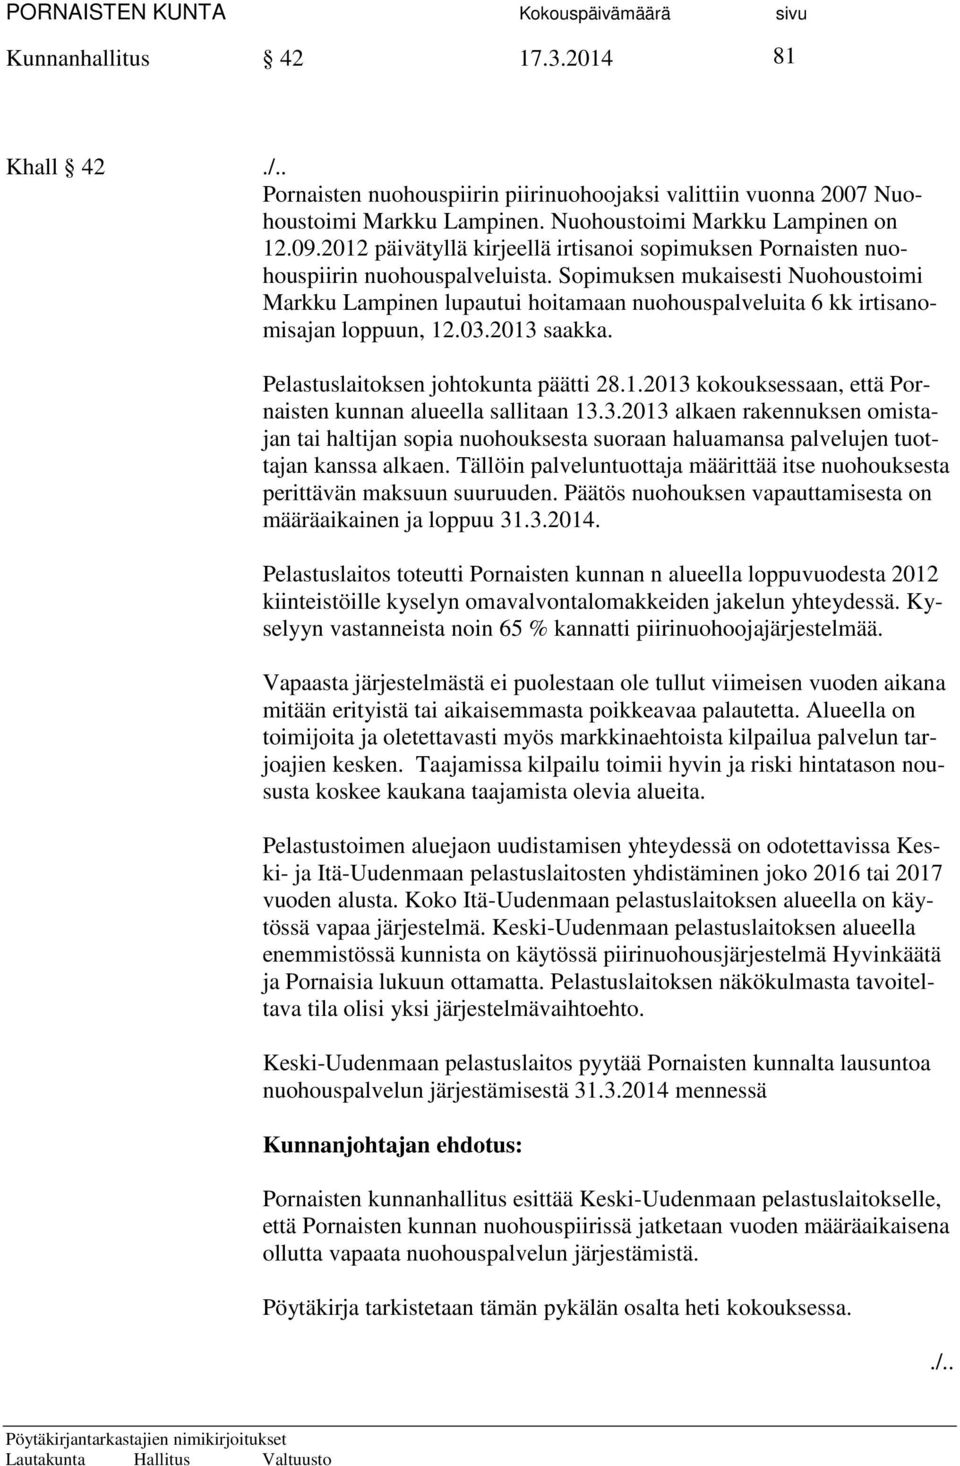 Sopimuksen mukaisesti Nuohoustoimi Markku Lampinen lupautui hoitamaan nuohouspalveluita 6 kk irtisanomisajan loppuun, 12.03.2013 saakka. Pelastuslaitoksen johtokunta päätti 28.1.2013 kokouksessaan, että Pornaisten kunnan alueella sallitaan 13.